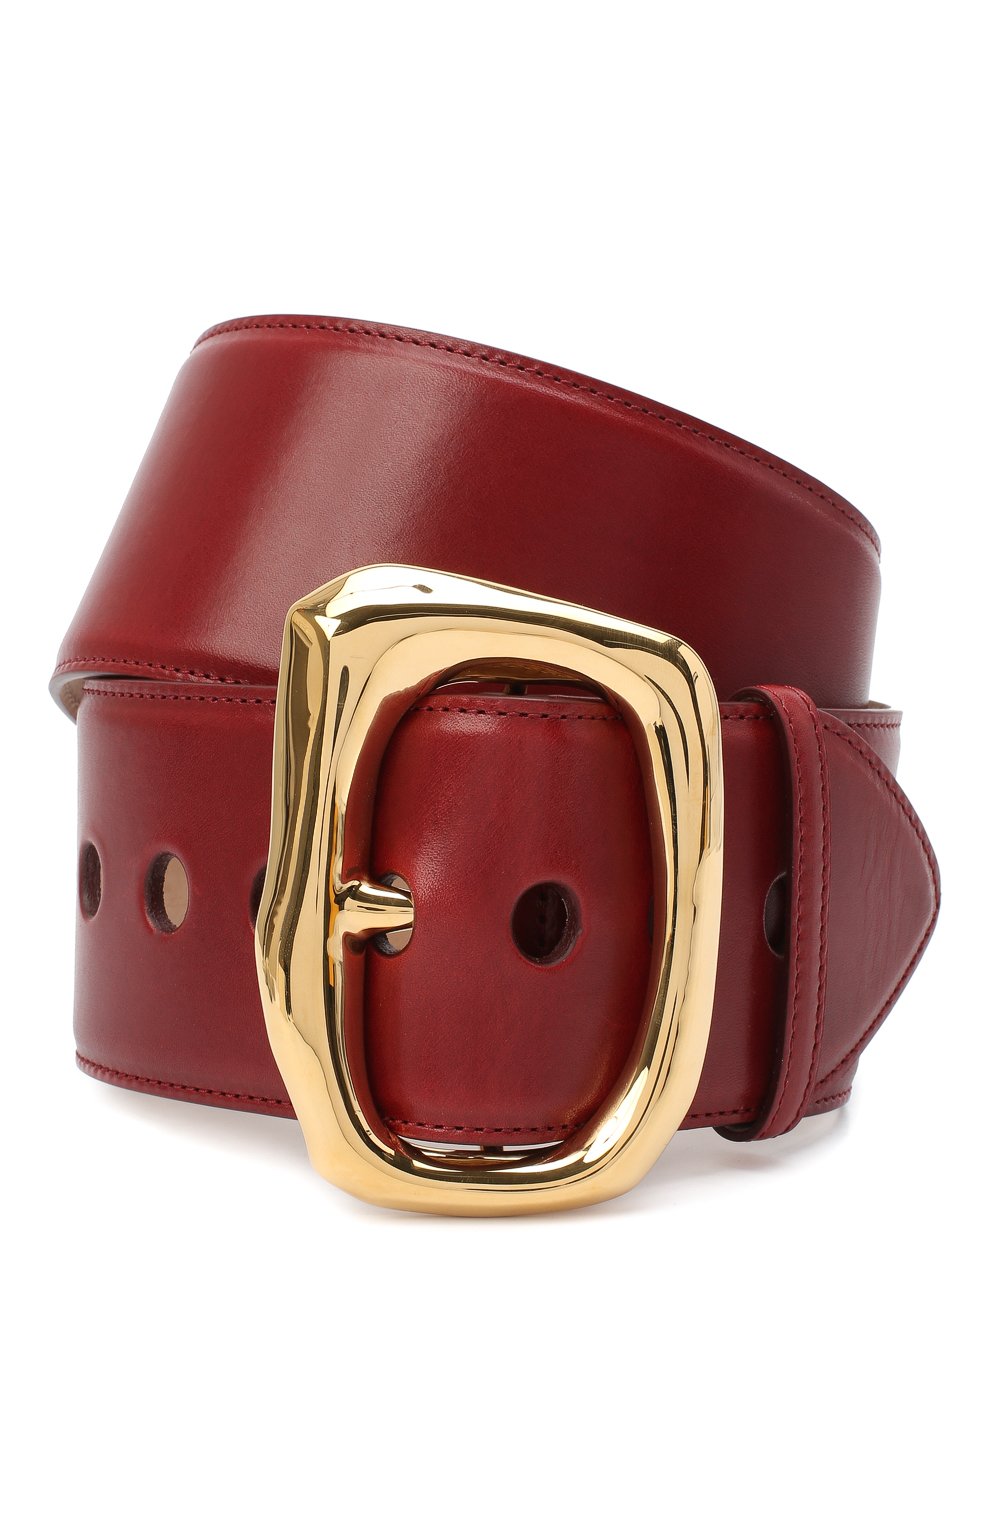 Пояса Alexander McQueen, Кожаный ремень Alexander McQueen, Италия, Красный, Кожа натуральная: 100%;, 11207654  - купить